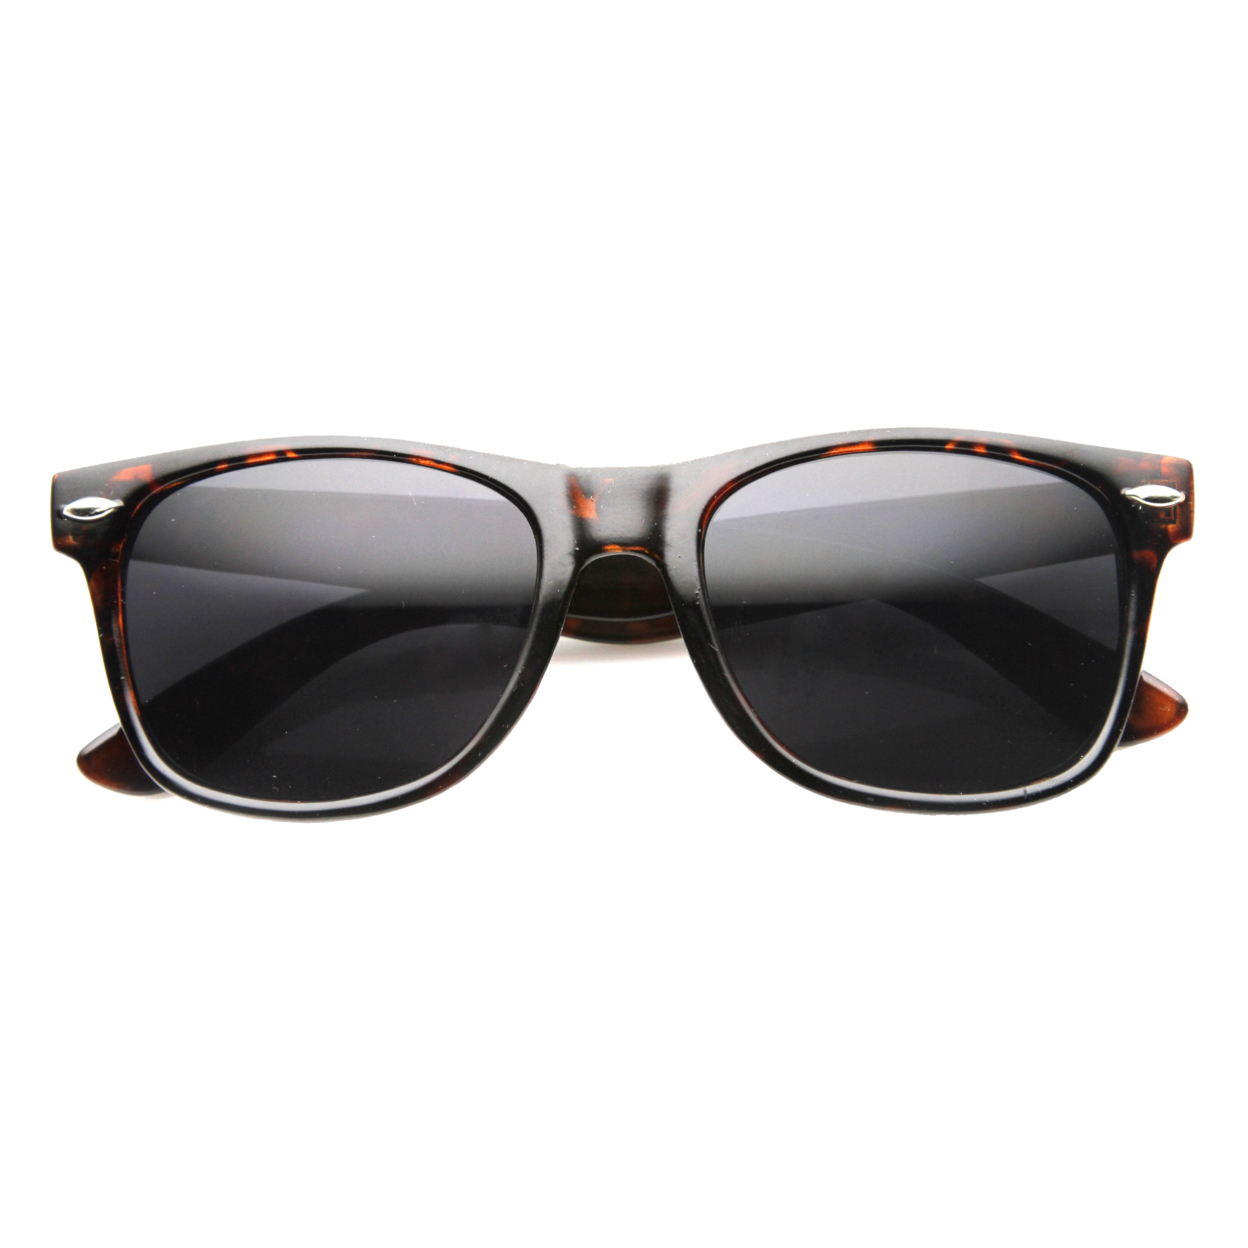 Classic 80s Retro Large Classic Horned Rim Style Sunglasses Eyewear - 8452 - Tortoise / Polarized Lens